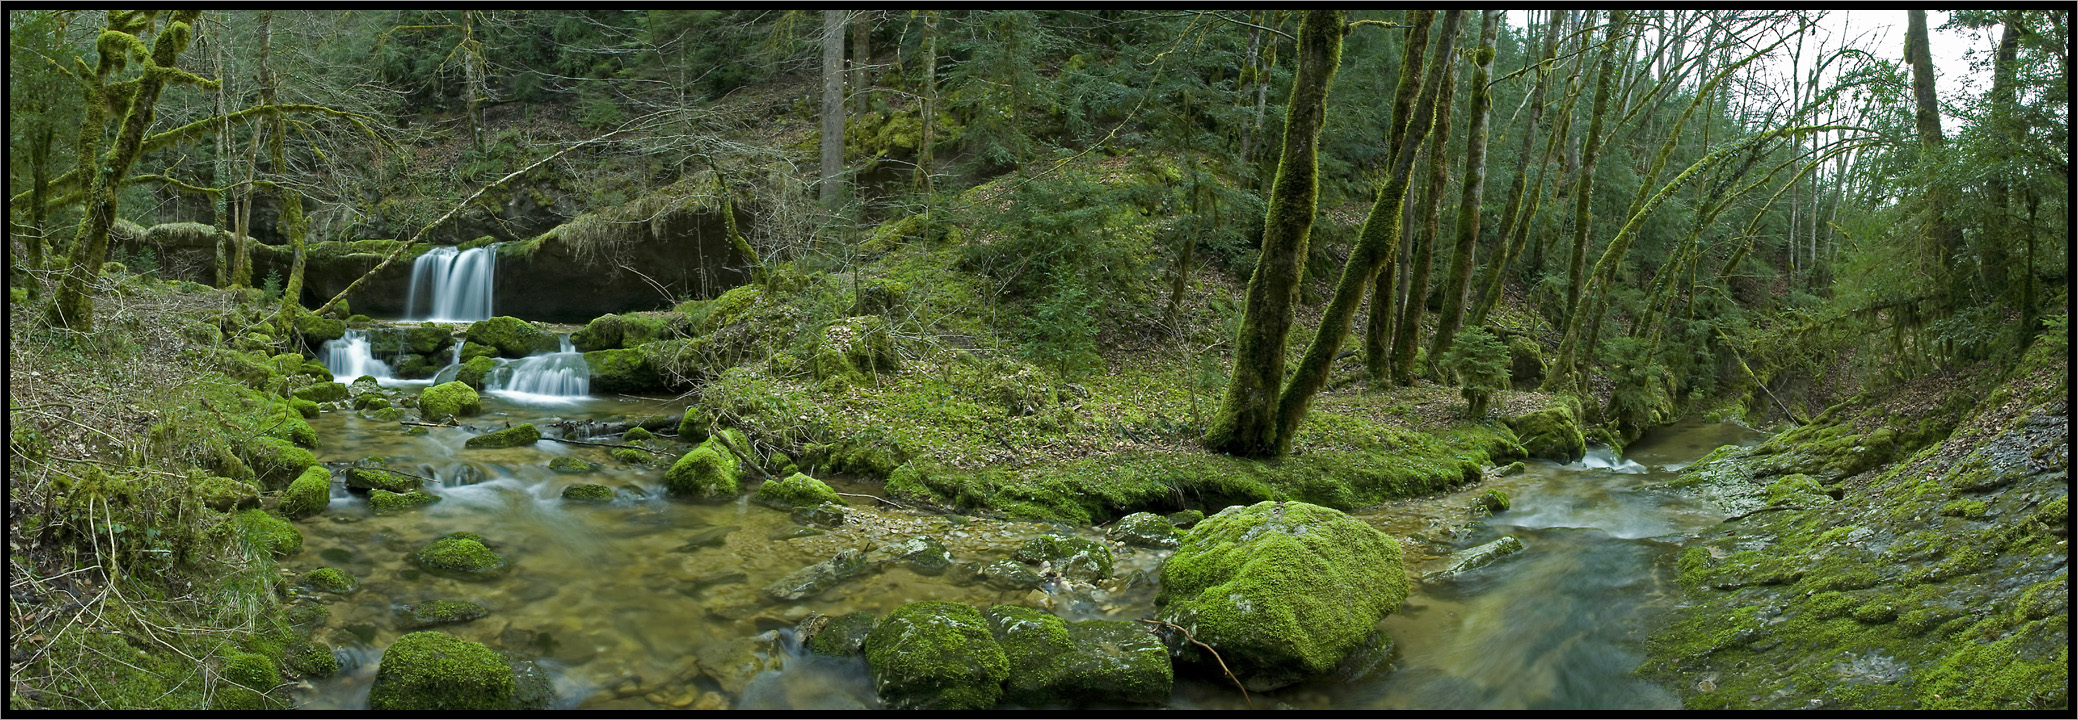 Cascades de la Vouivre, Saint-Claude (39), France, Avril 2007